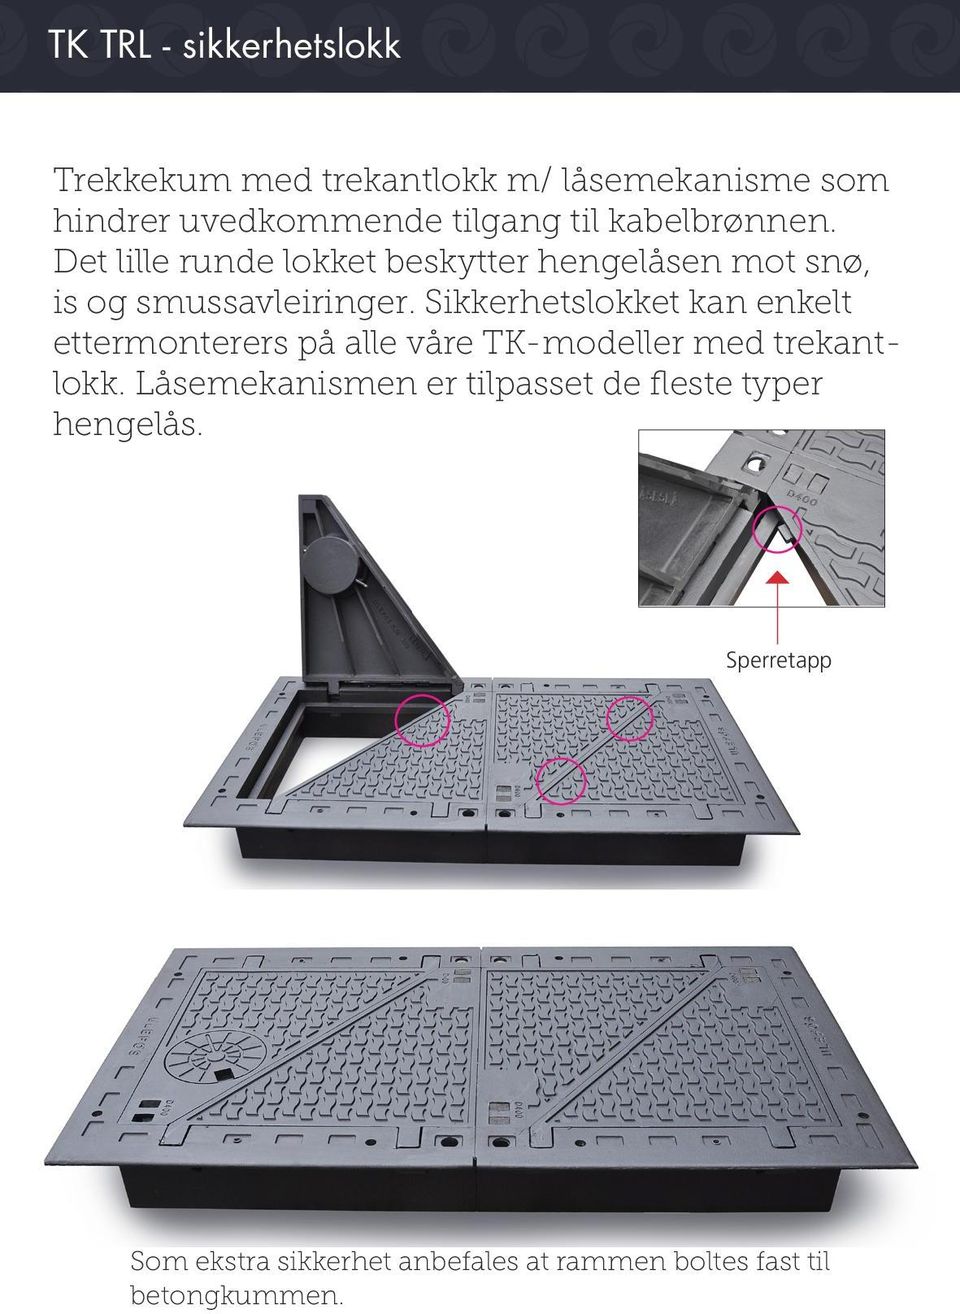 Sikkerhetslokket kan enkelt ettermonterers på alle våre TK-modeller med trekantlokk.